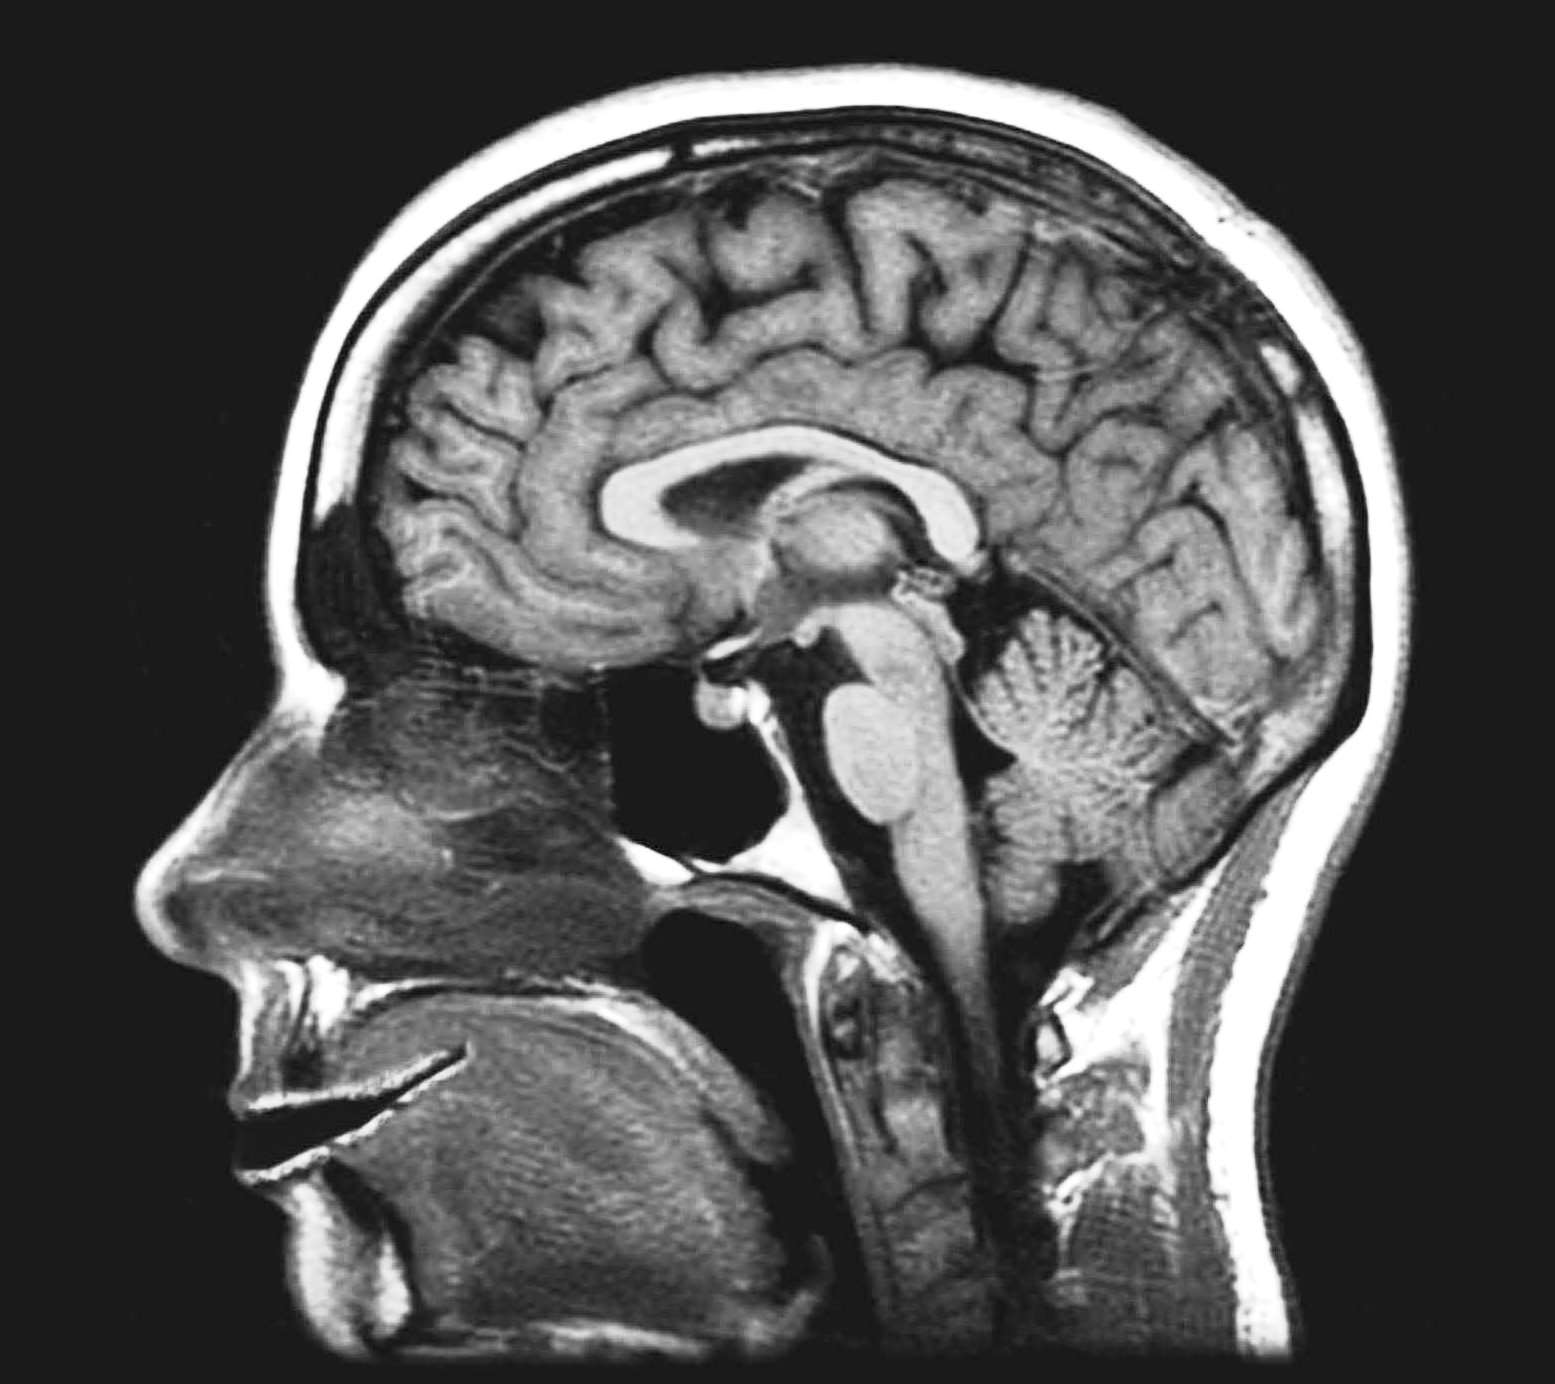 Фото знімок МРТ очних орбіт здорової людини (норма)